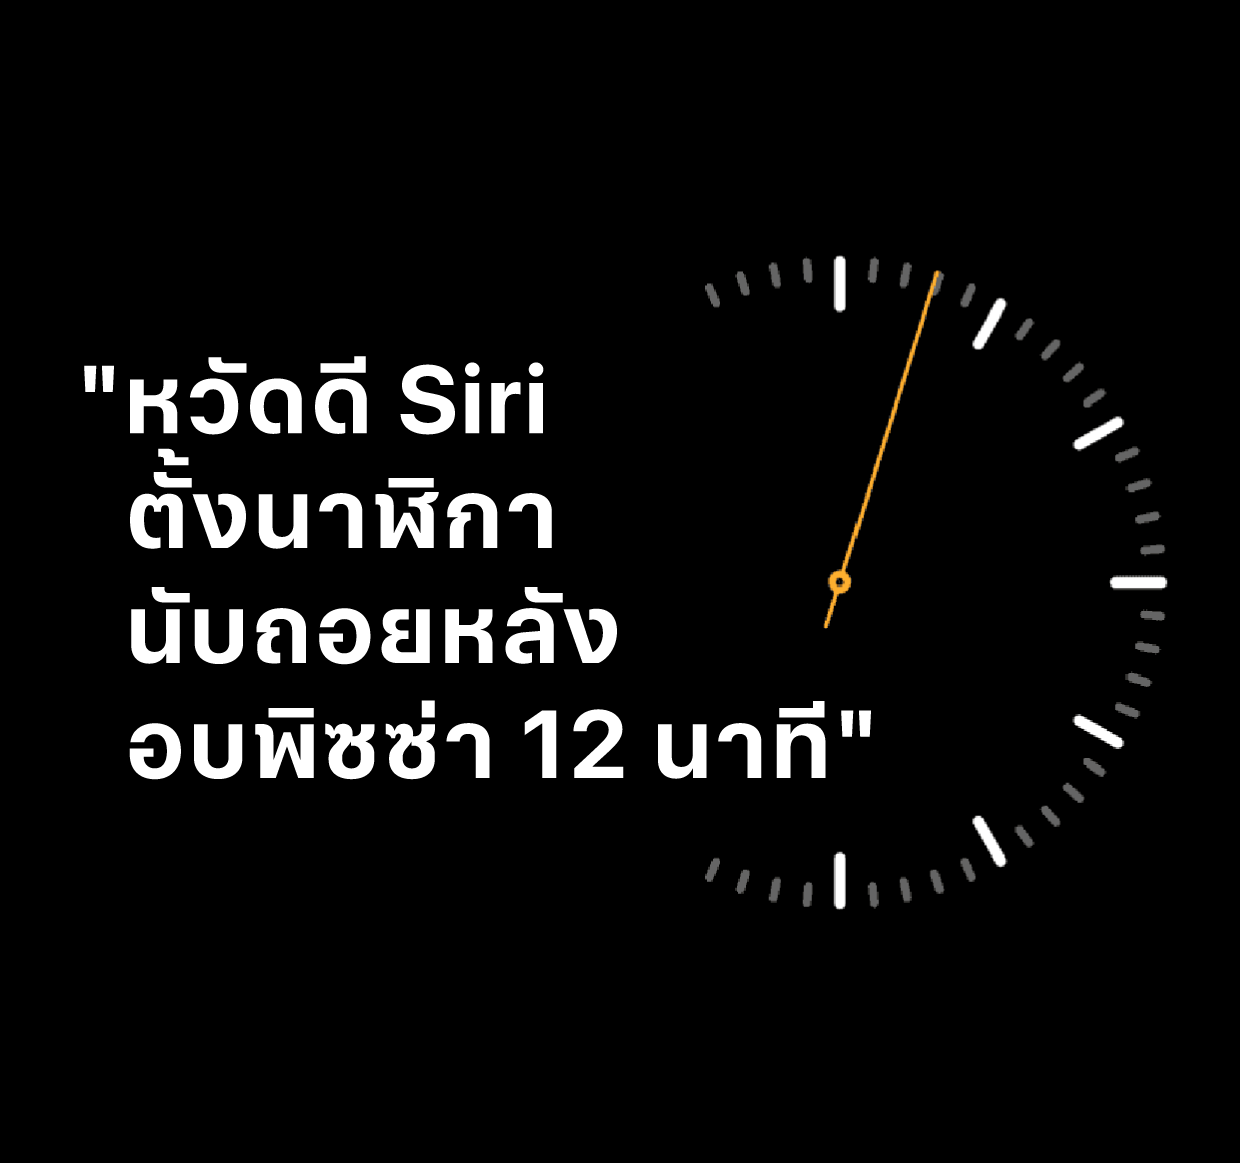 ภาพประกอบที่มีข้อความว่า “หวัดดี Siri ตั้งนาฬิกานับถอยหลังอบพิซซ่า 12 นาที”